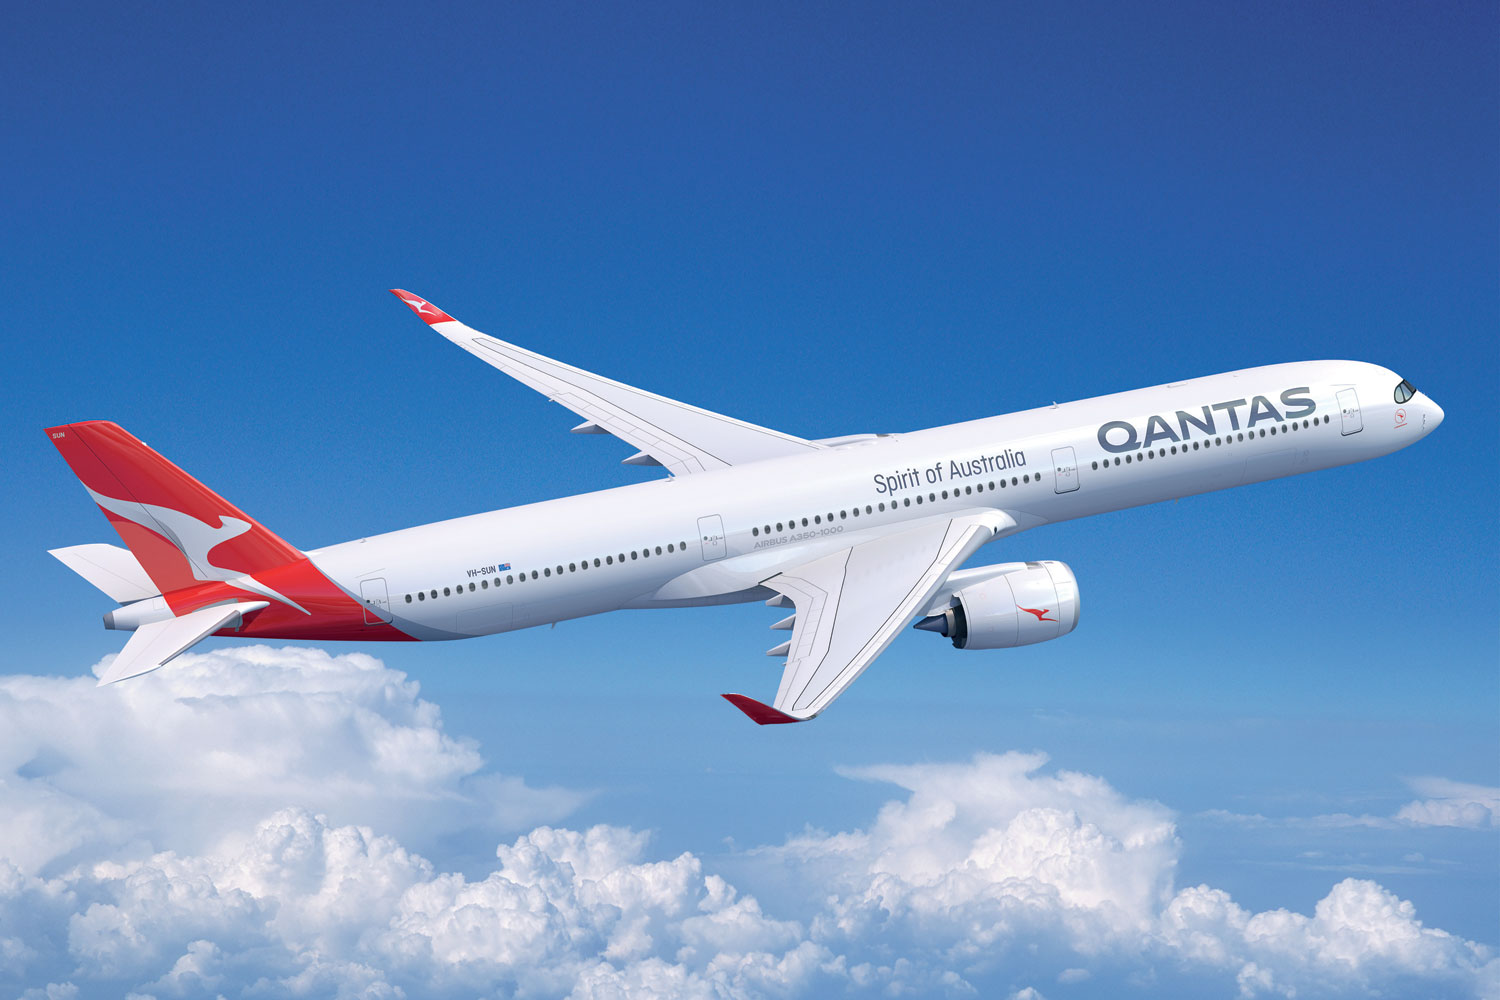 Qantas atrasa o lançamento do Projeto Sunrise